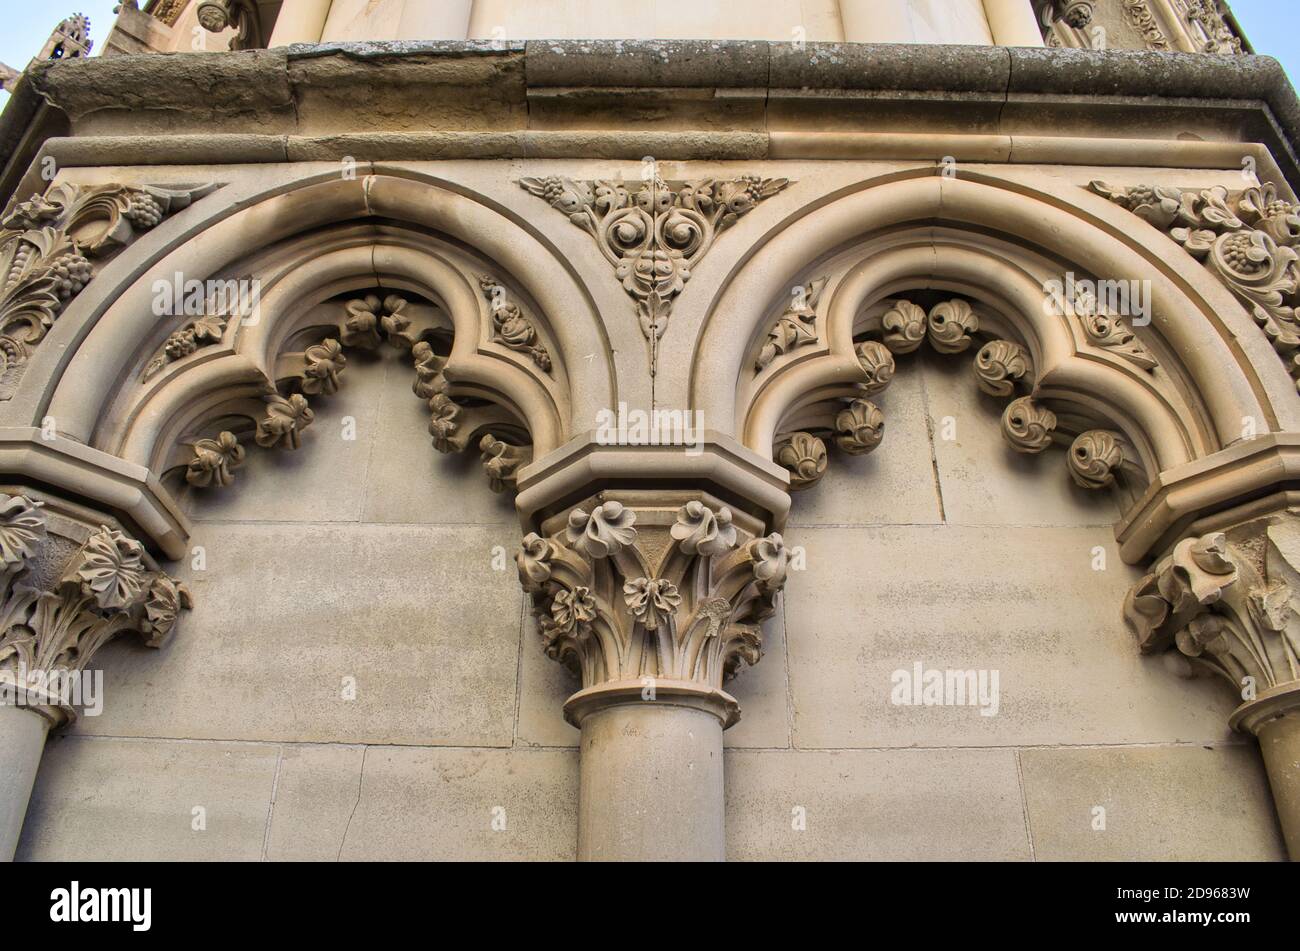 Architecture extérieure de style gothique dans la cathédrale de Cuenca, Espagne Banque D'Images